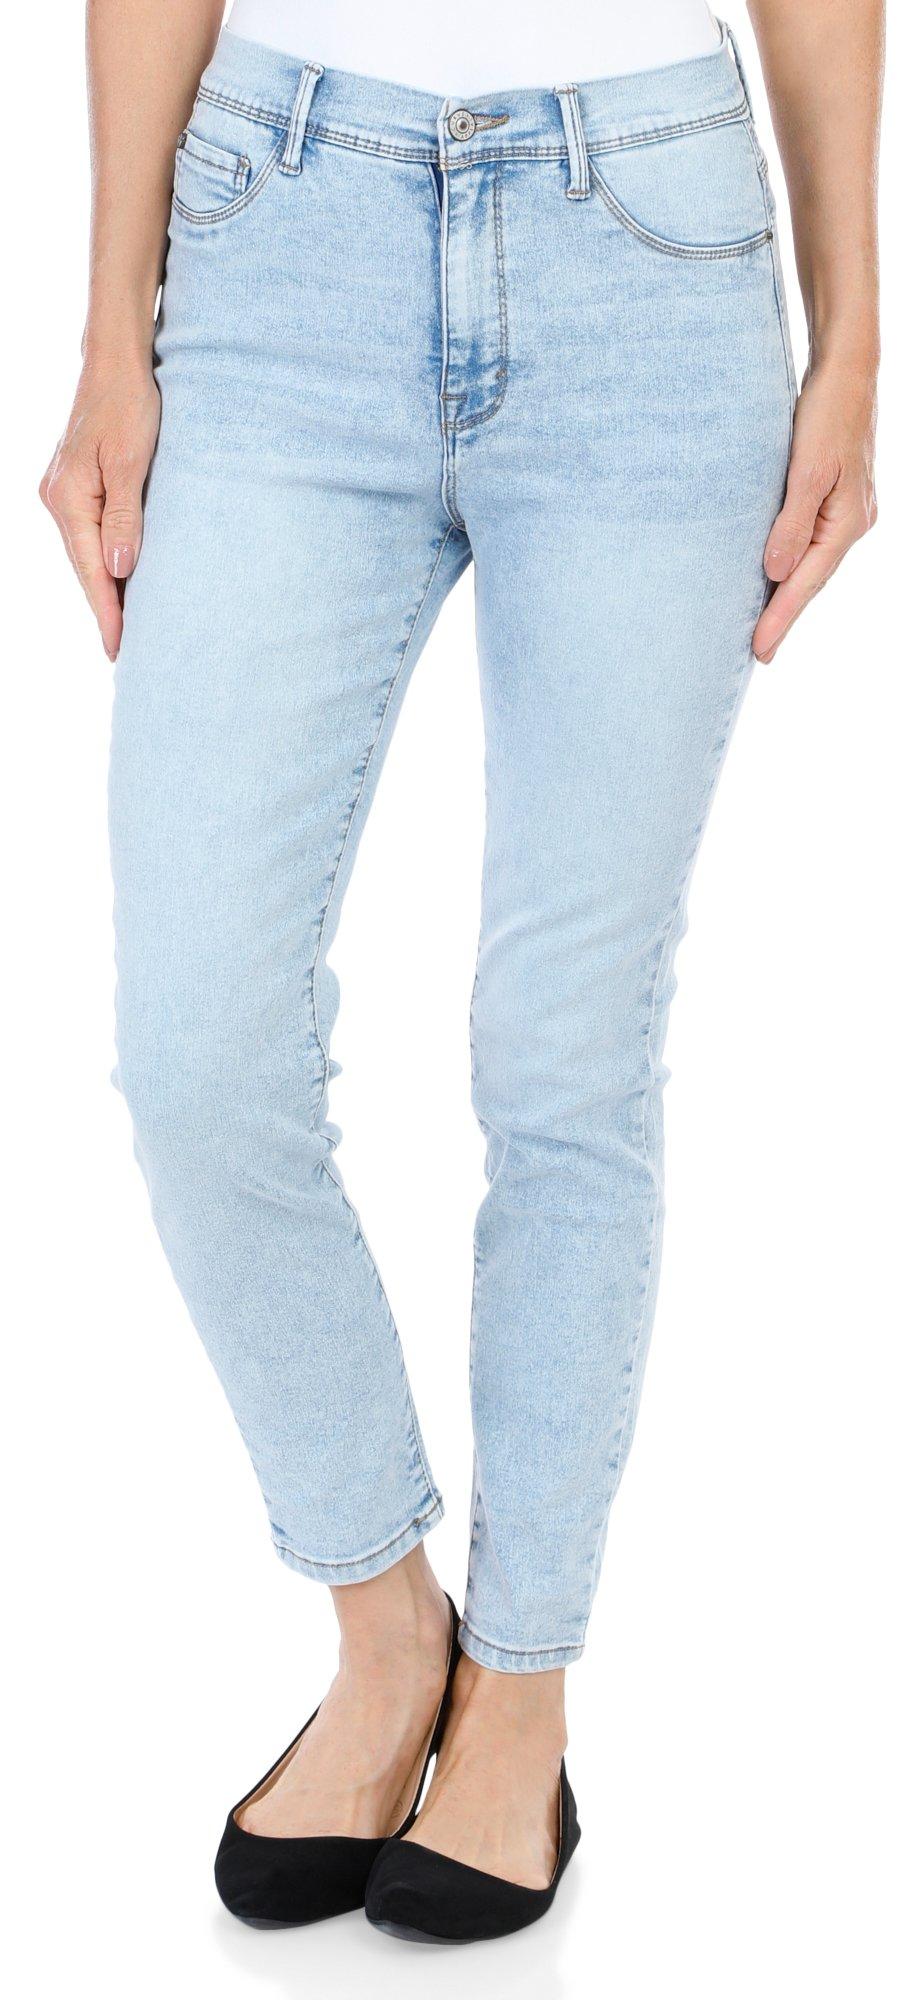 MAC Jeans Capri - tall women's jeans